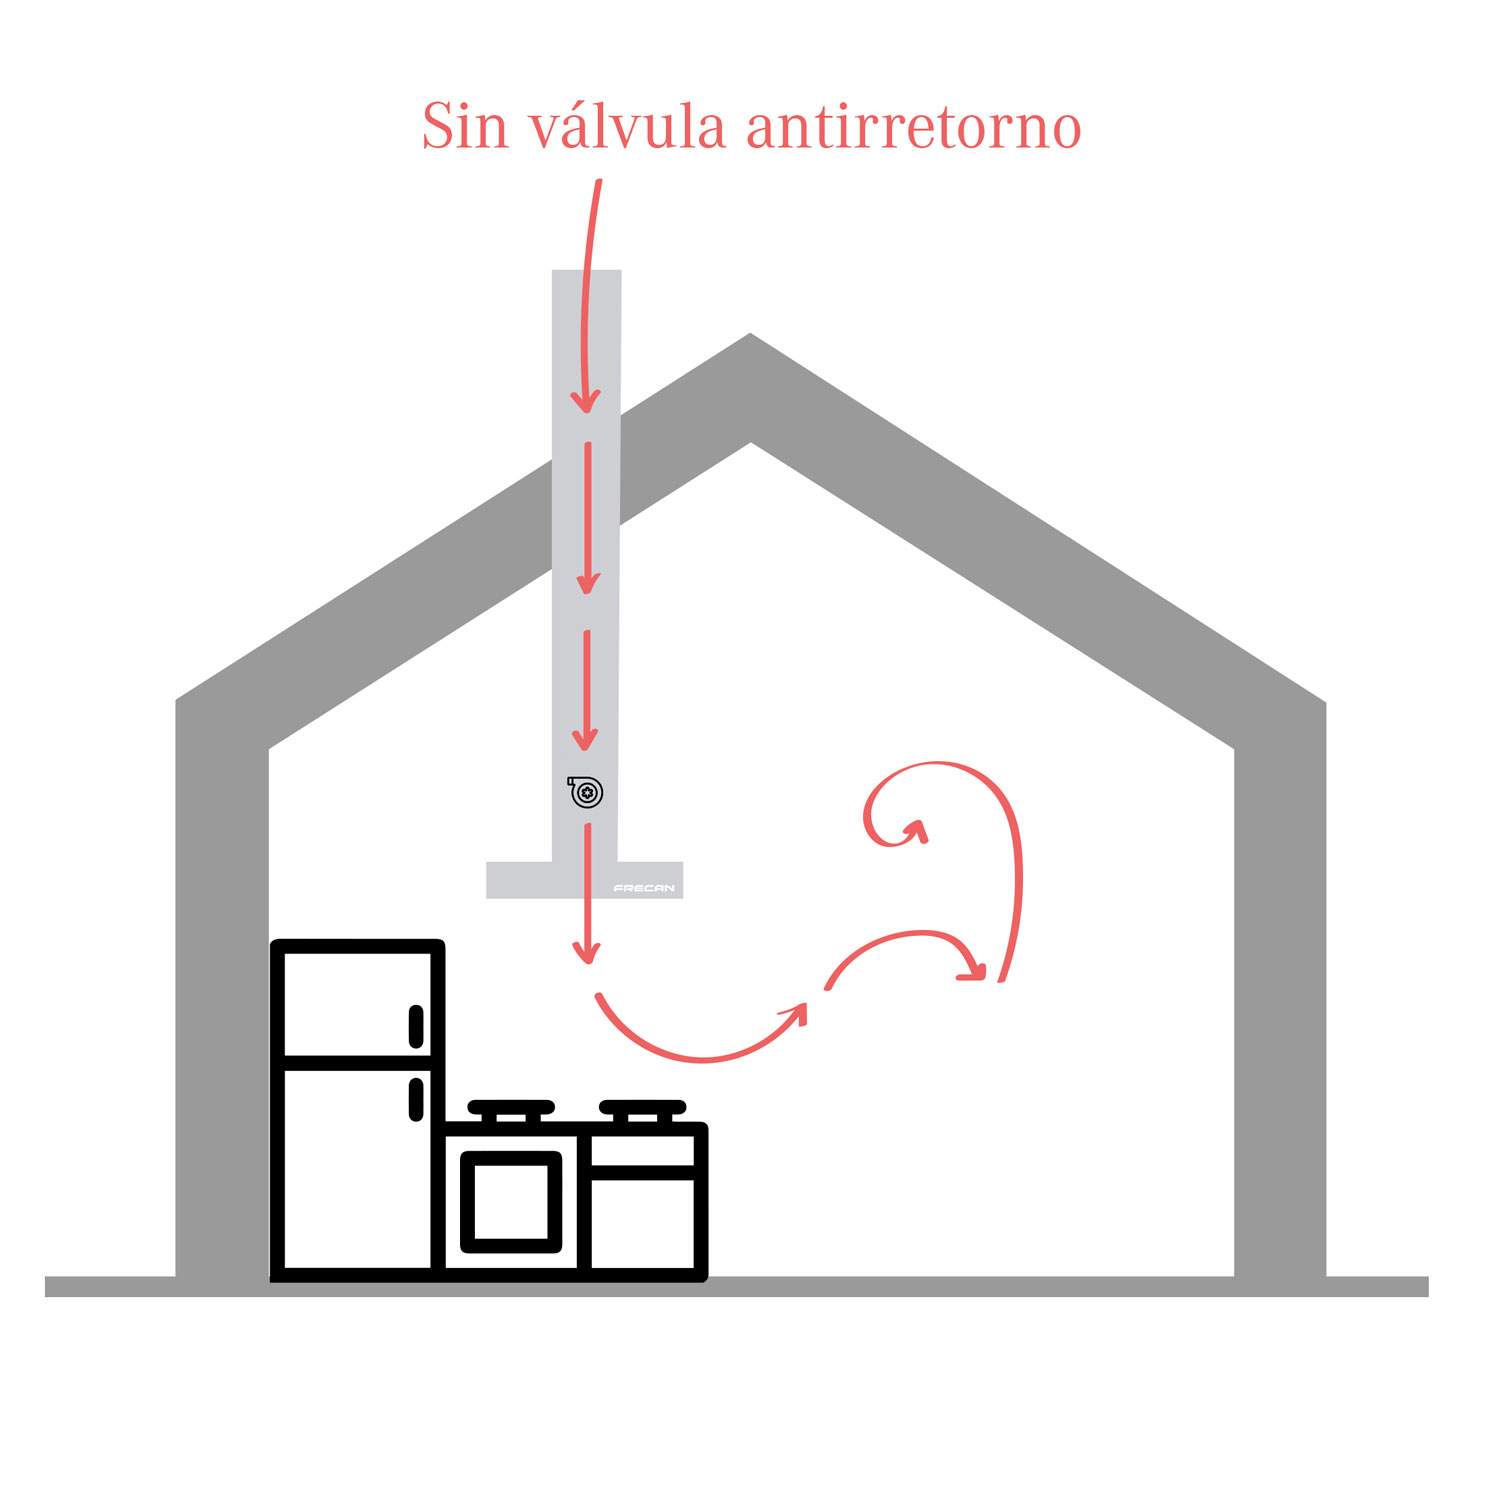 Valvula Antiretorno Campana Extractora,100mm Valvula Antiretorno Tuberia  Aire Inoxidable, para Sistema de Ventilación, Tapa Salida de Humos